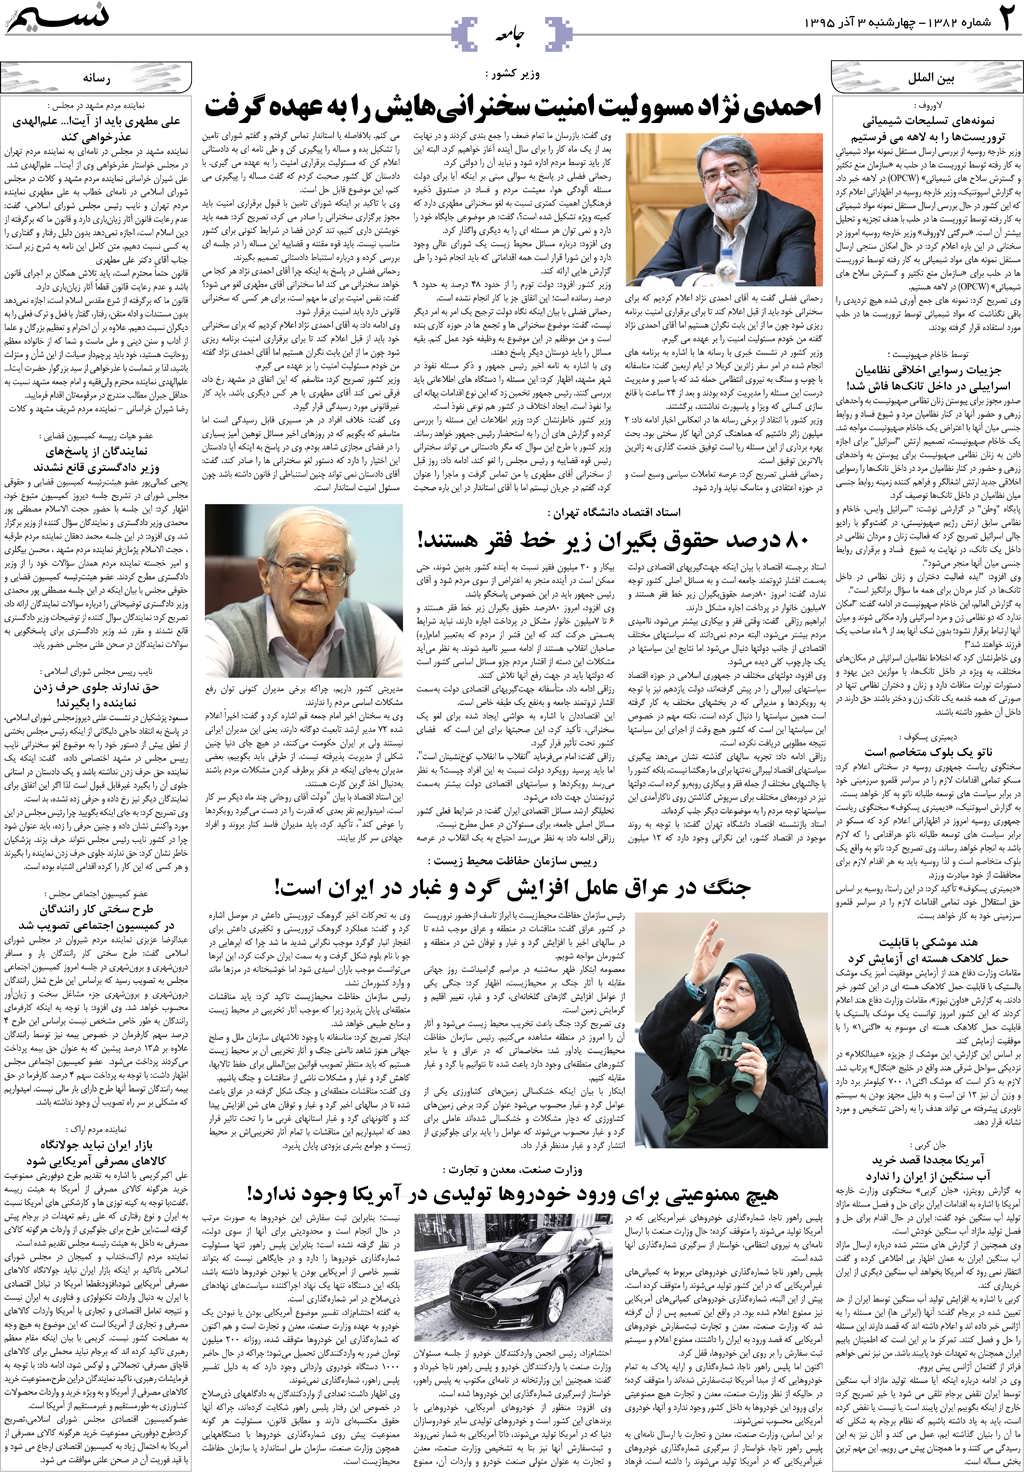 صفحه جامعه روزنامه نسیم شماره 1382